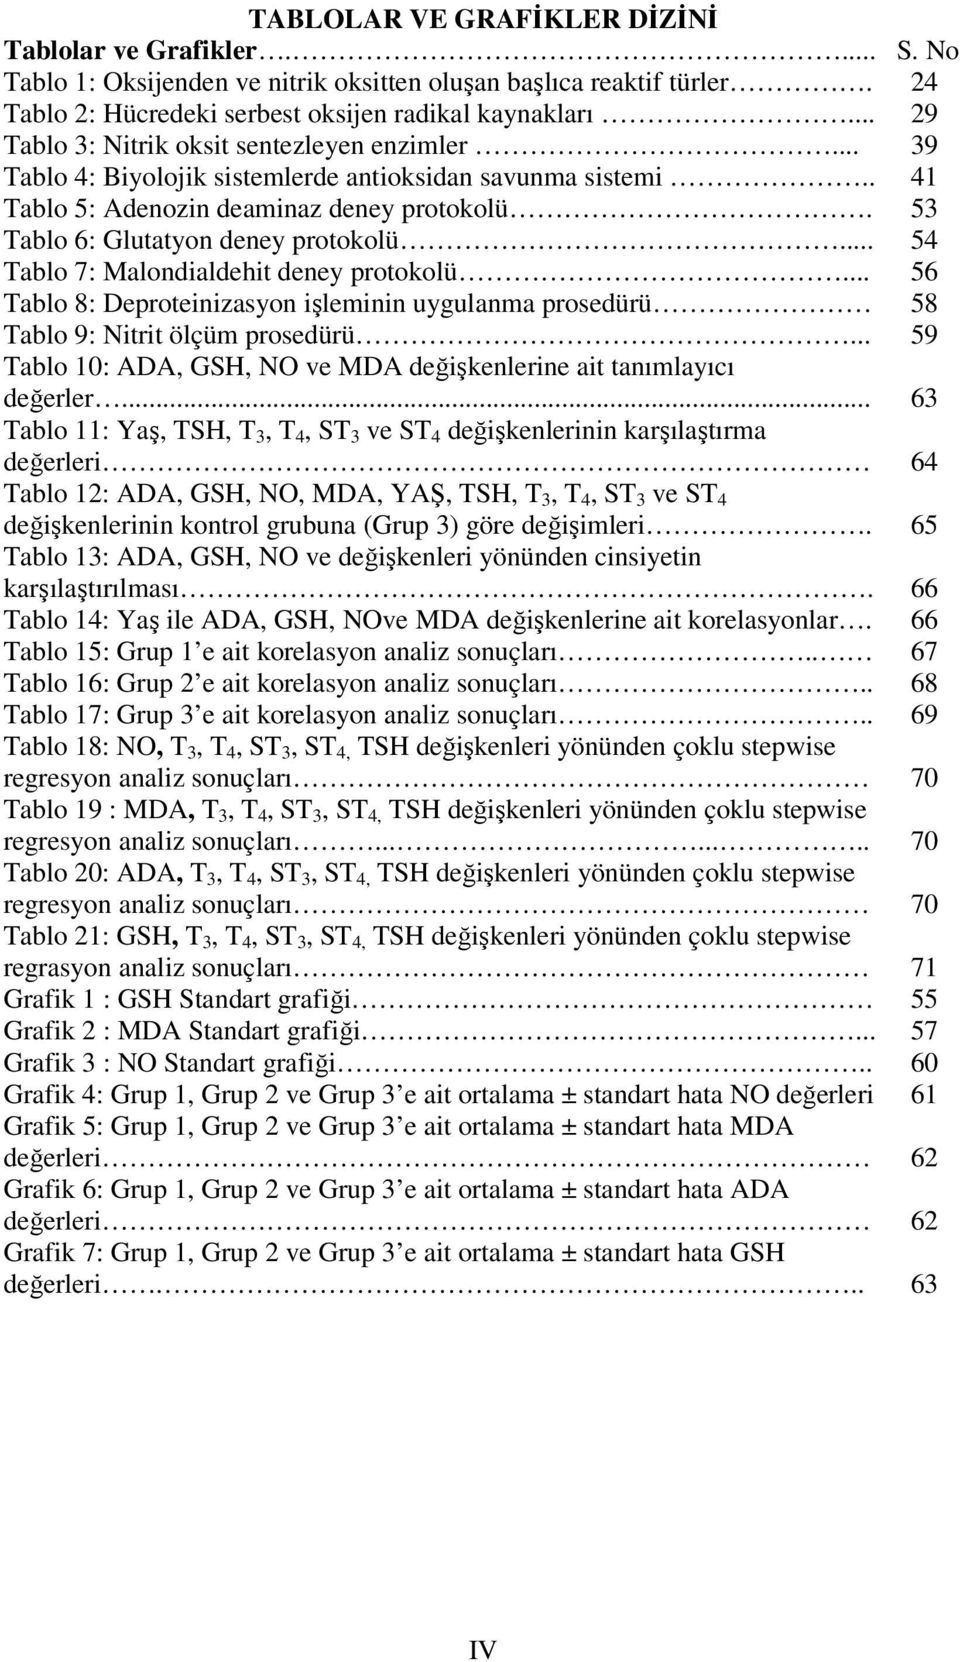 53 Tablo 6: Glutatyon deney protokolü... 54 Tablo 7: Malondialdehit deney protokolü... 56 Tablo 8: Deproteinizasyon işleminin uygulanma prosedürü 58 Tablo 9: Nitrit ölçüm prosedürü.